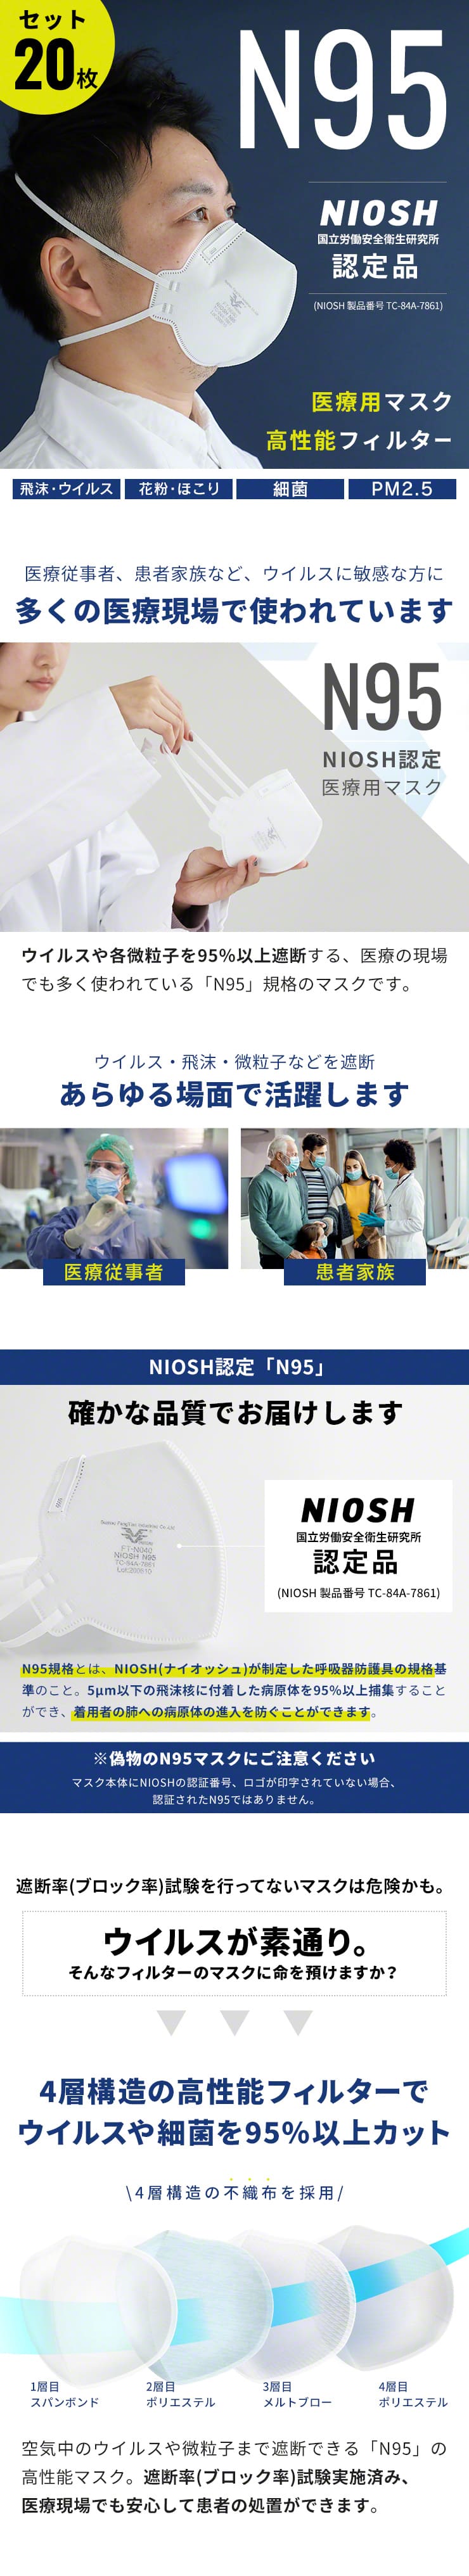 医療用マスク N95 NIOSH 認定 不織布 4層フィルター 構造